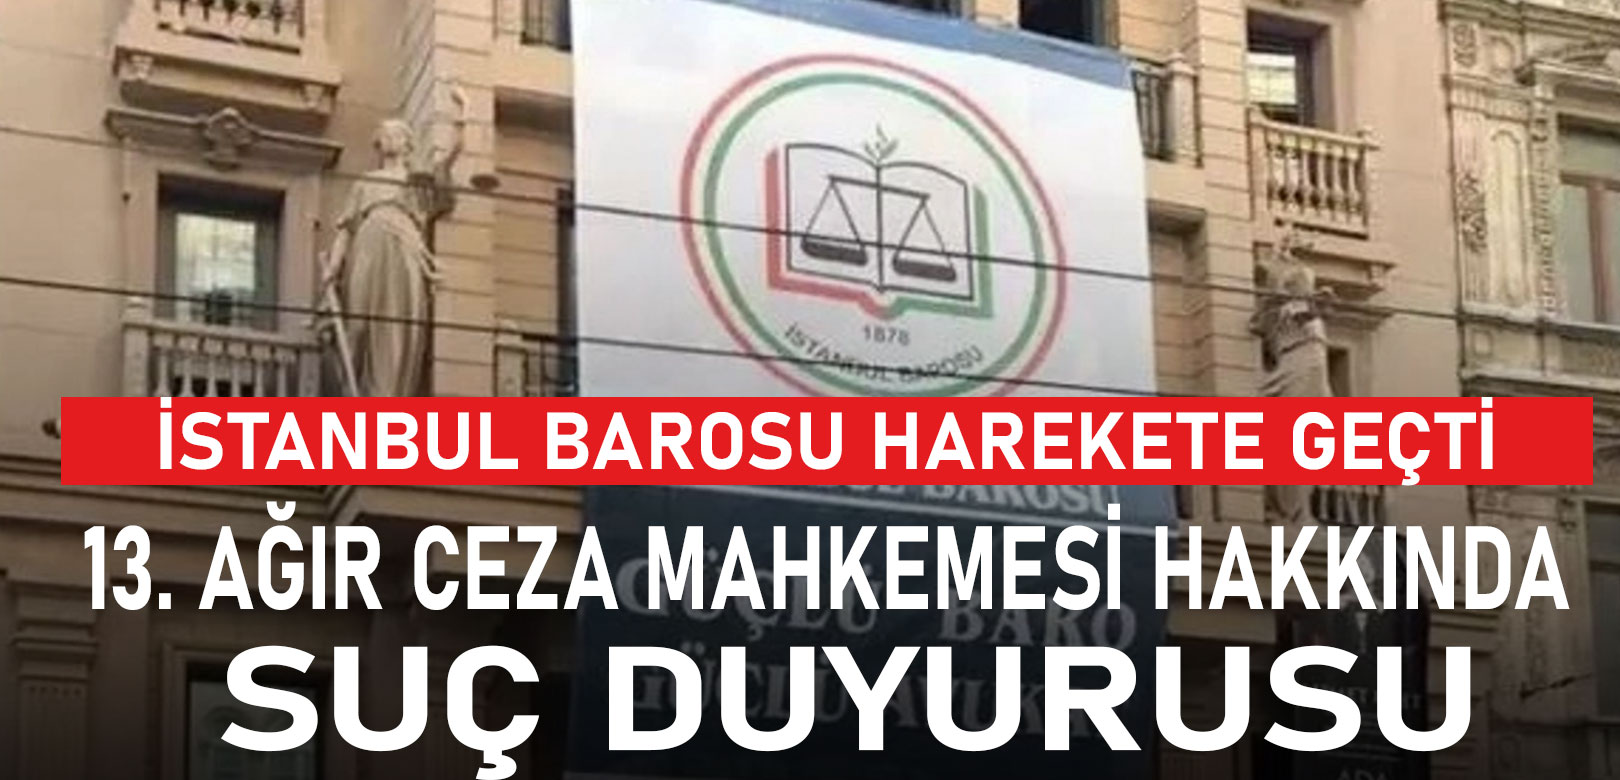 İstanbul Barosu’ndan, 13. Ağır Ceza Mahkemesi hakkında suç duyurusu